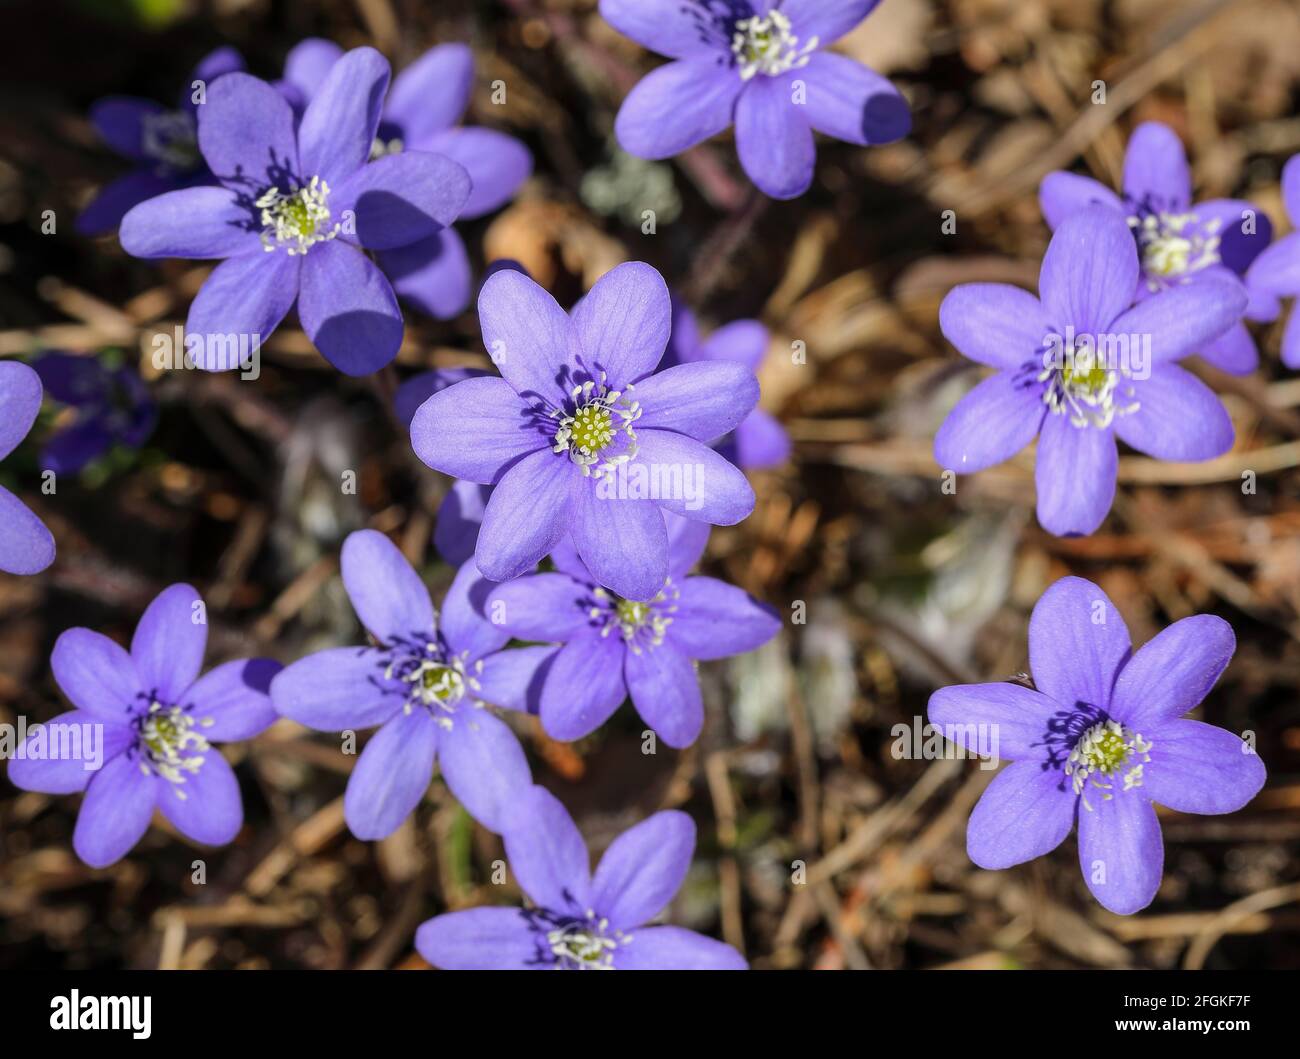 Common hepatica flowering (Hepatica nobilis) Stock Photo